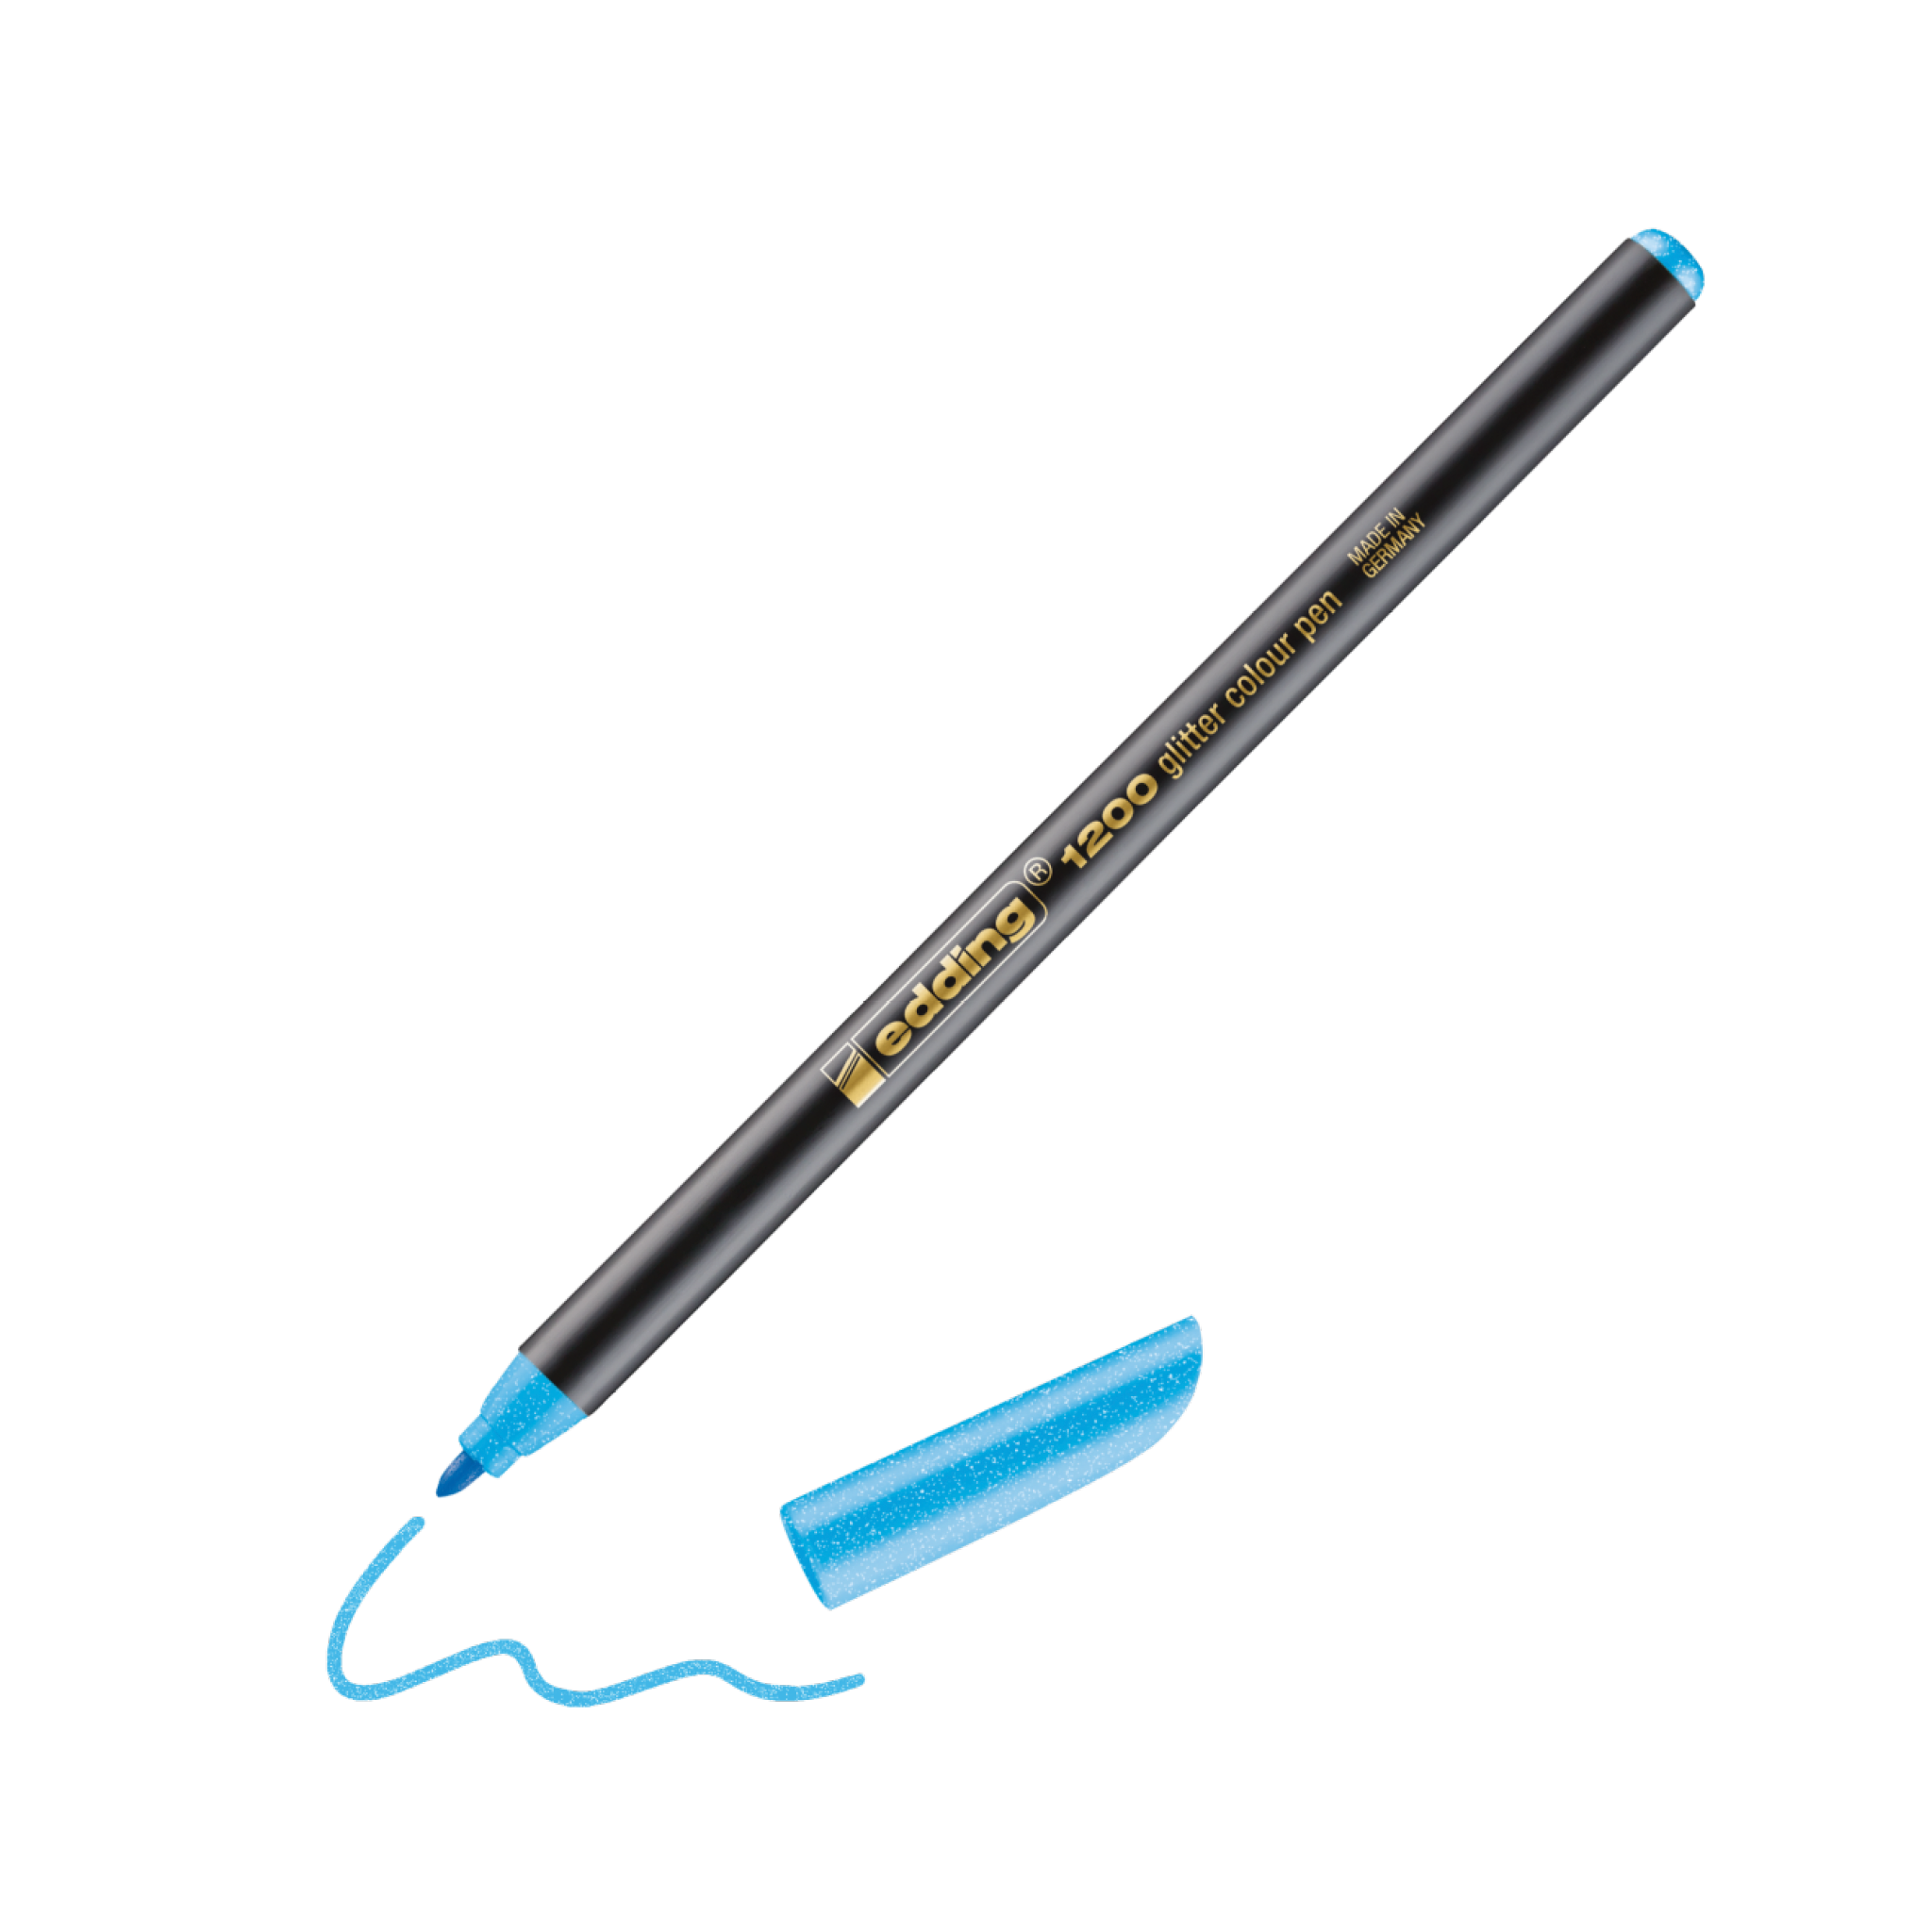 Ein schwarzer edding 1200 Glitzer Fasermaler mit entfernter blauer Kappe, der mit blauer Tinte eine verschnörkelte Linie auf weißem Hintergrund zeichnet und so den Kreativprozess unterstreicht.